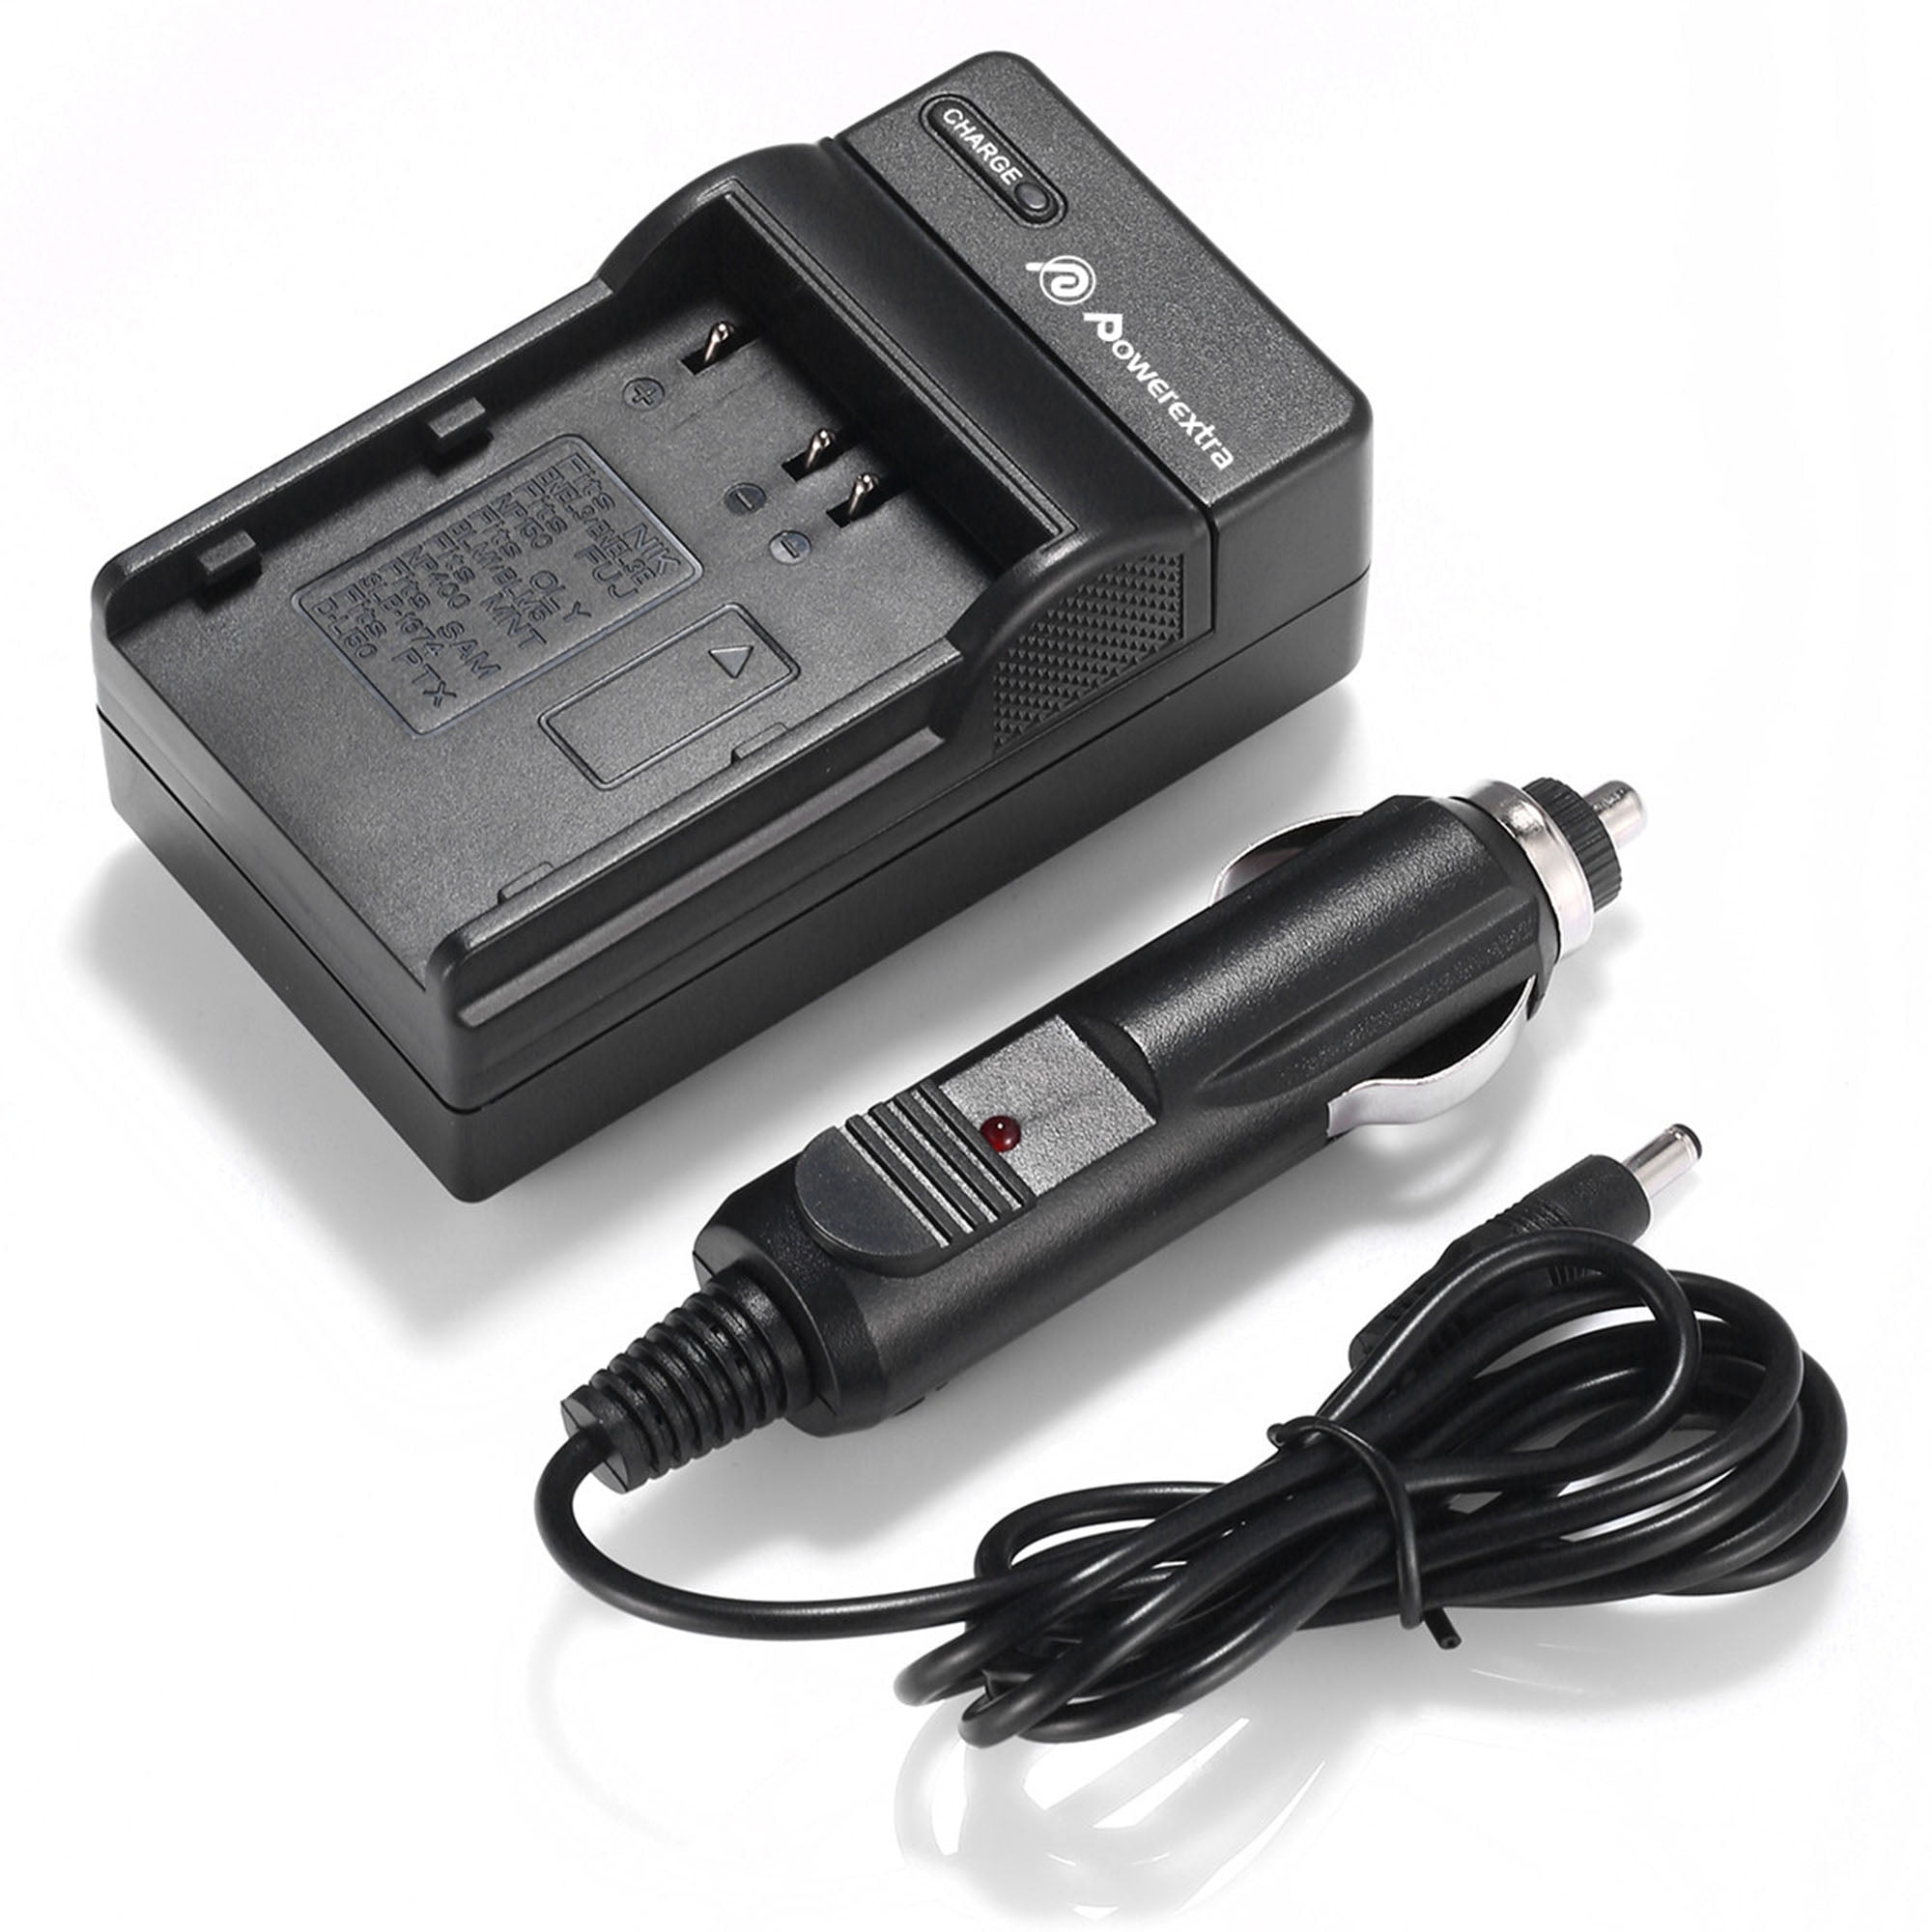 EN-EL3E EN EL3 DSTE Batterie de rechange compatible avec appareils photo reflex numériques Nikon D70 D70s D80 D90 D100 D200 D300 D300s D700 